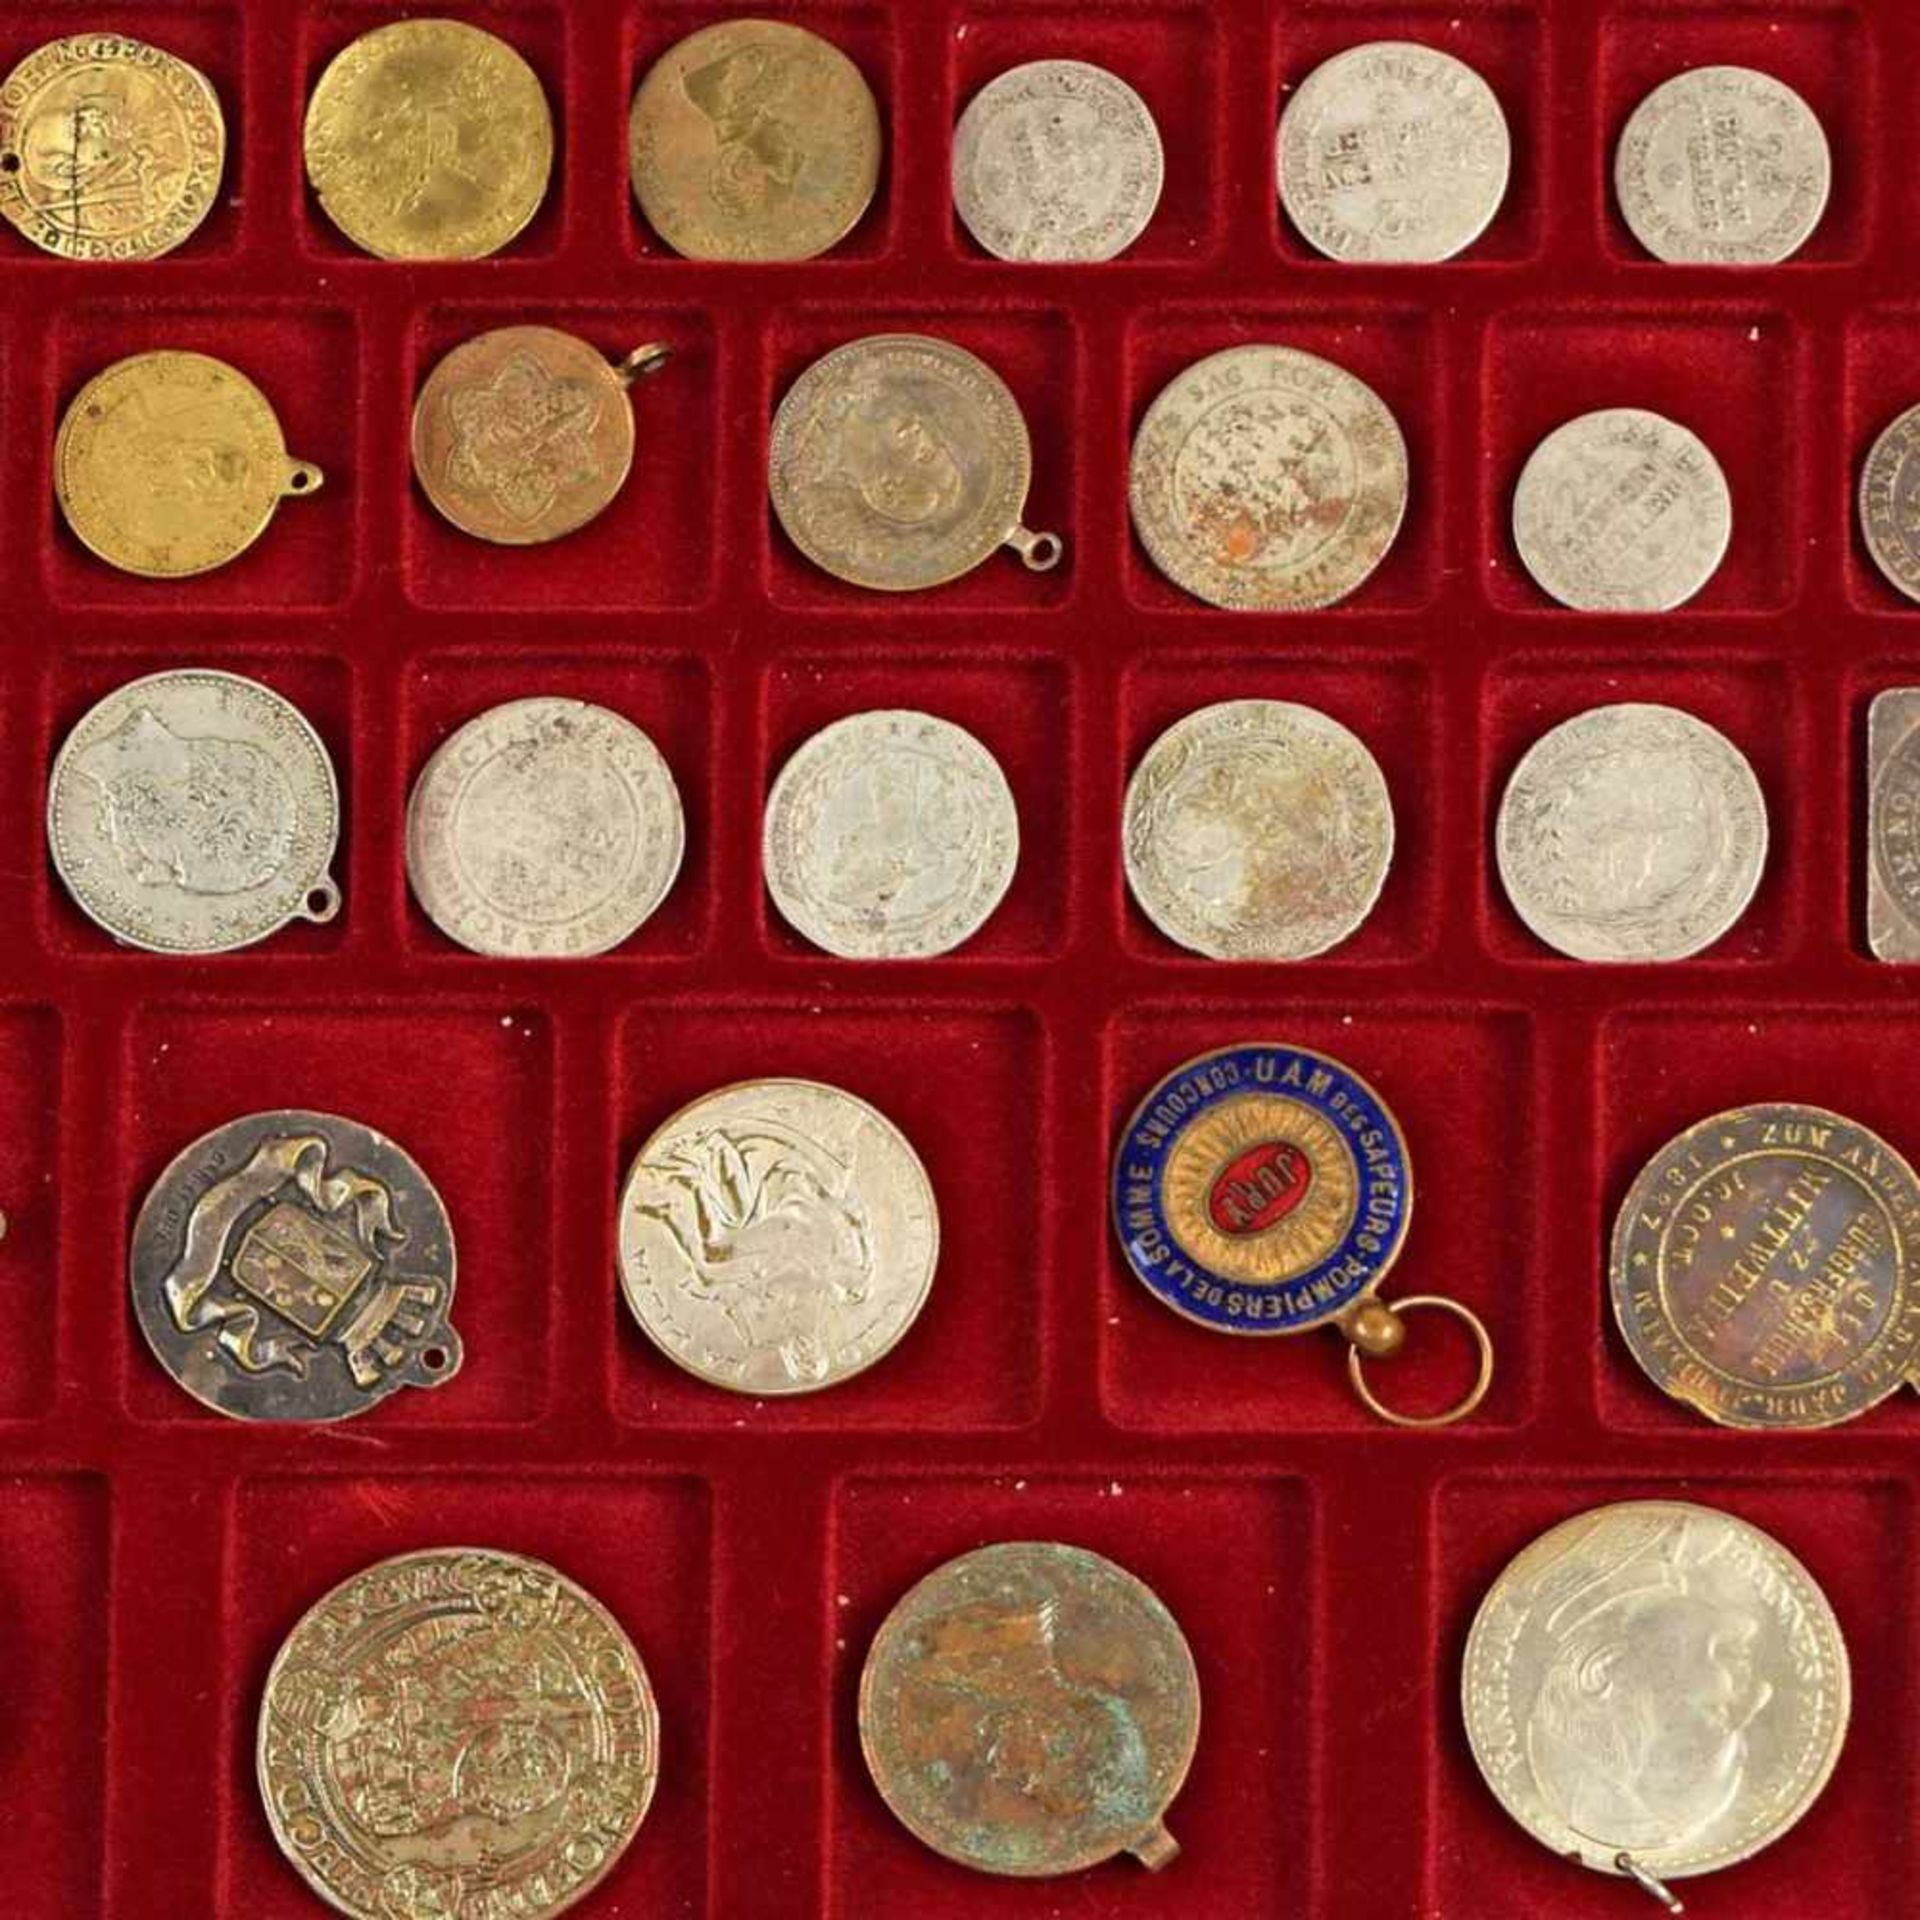 Konvolut Münzen und Medaillen insg. ca. 45 Münzen, Medaillen etc., dabei u.a. Taler-Teilstücke,